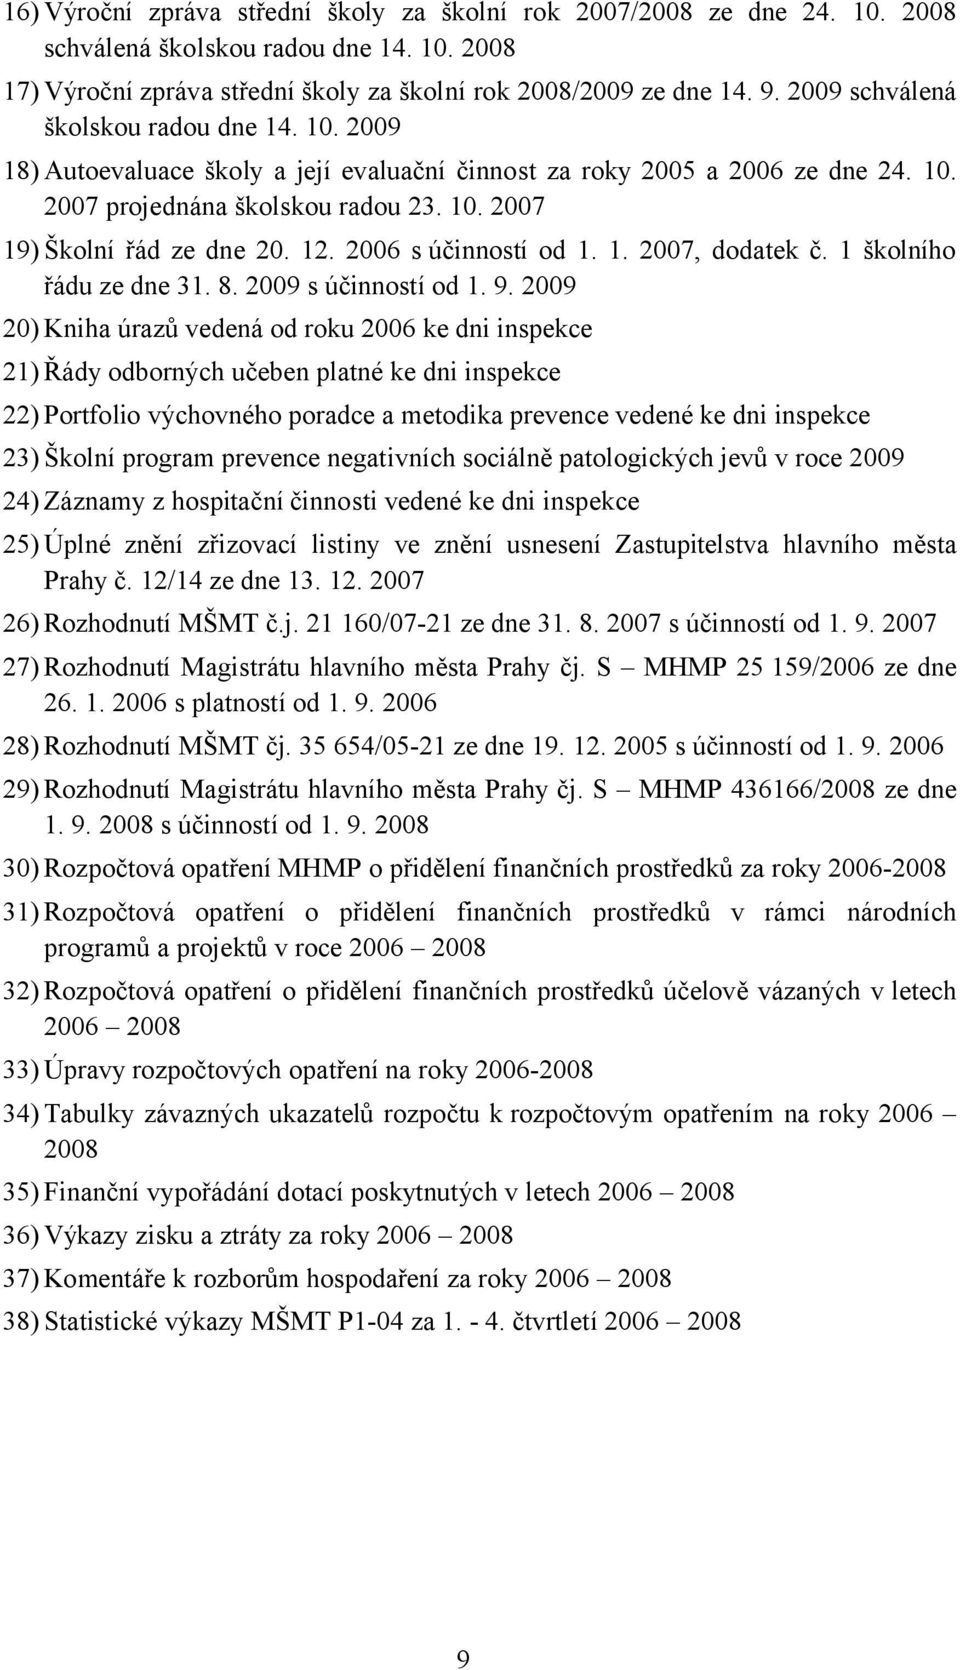 12. 2006 s účinností od 1. 1. 2007, dodatek č. 1 školního řádu ze dne 31. 8. 2009 s účinností od 1. 9.